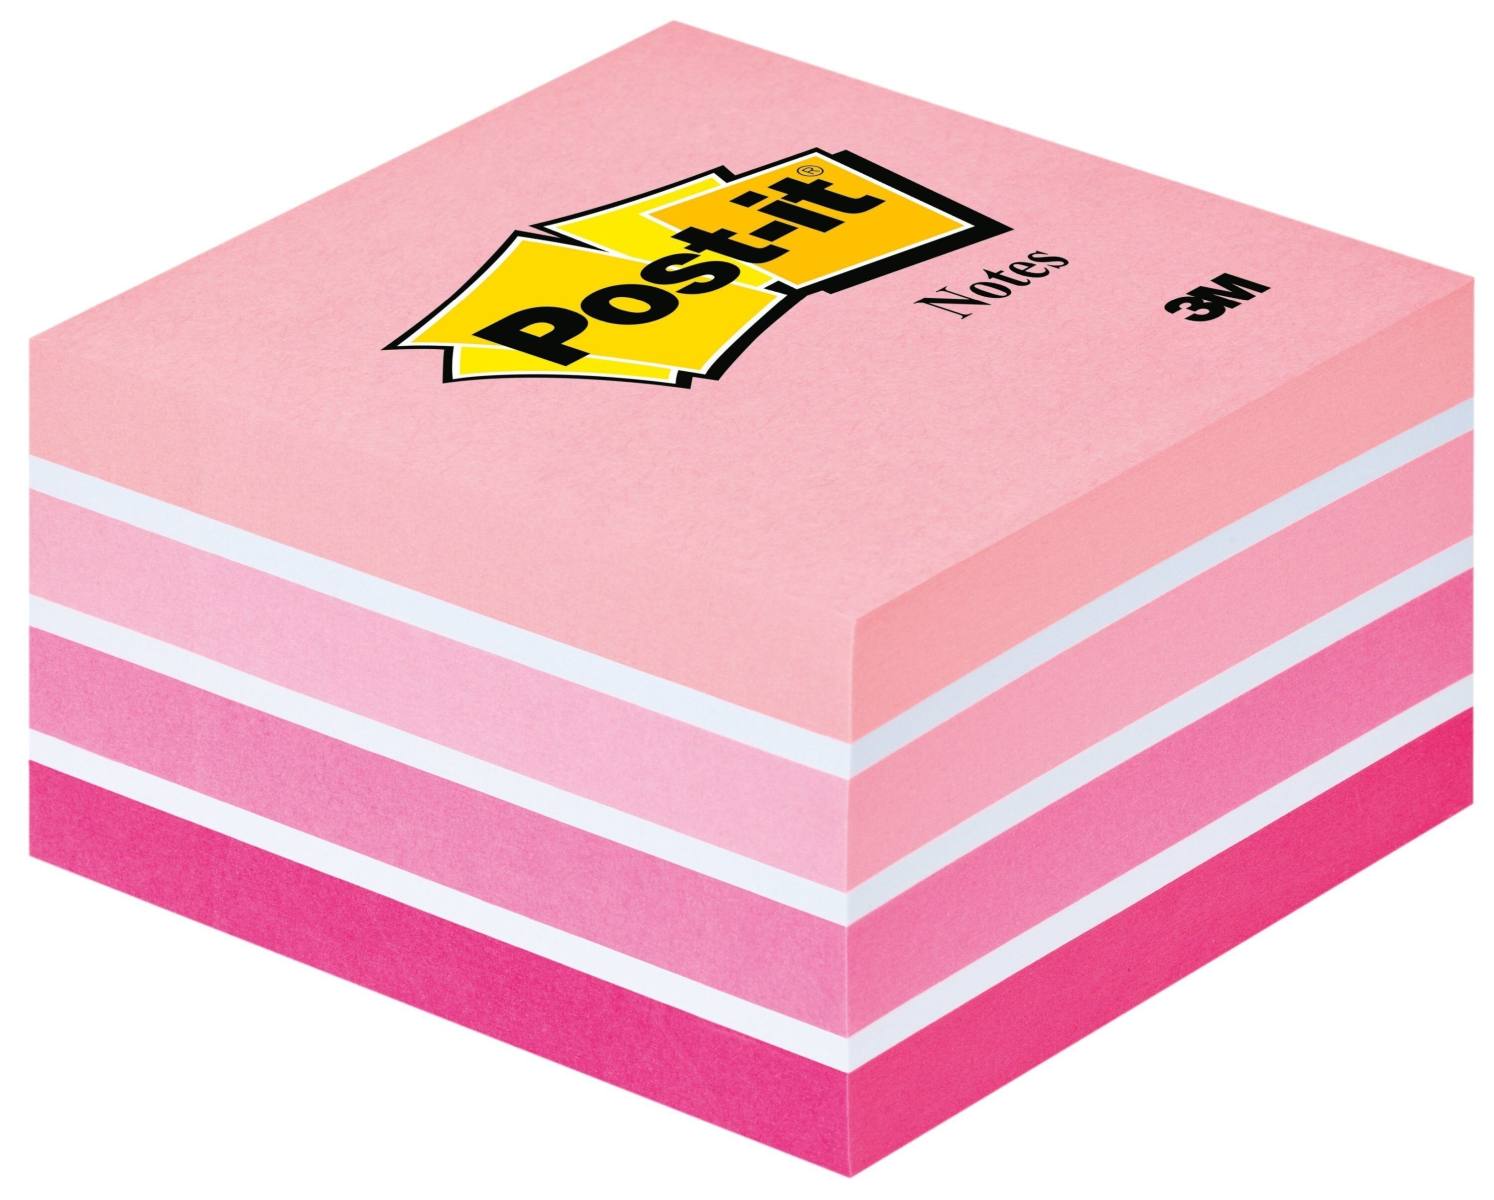 cubo Post-it 3M 2028P, 76 mm x 76 mm, colore rosa pastello, 1 cubo da 450 fogli